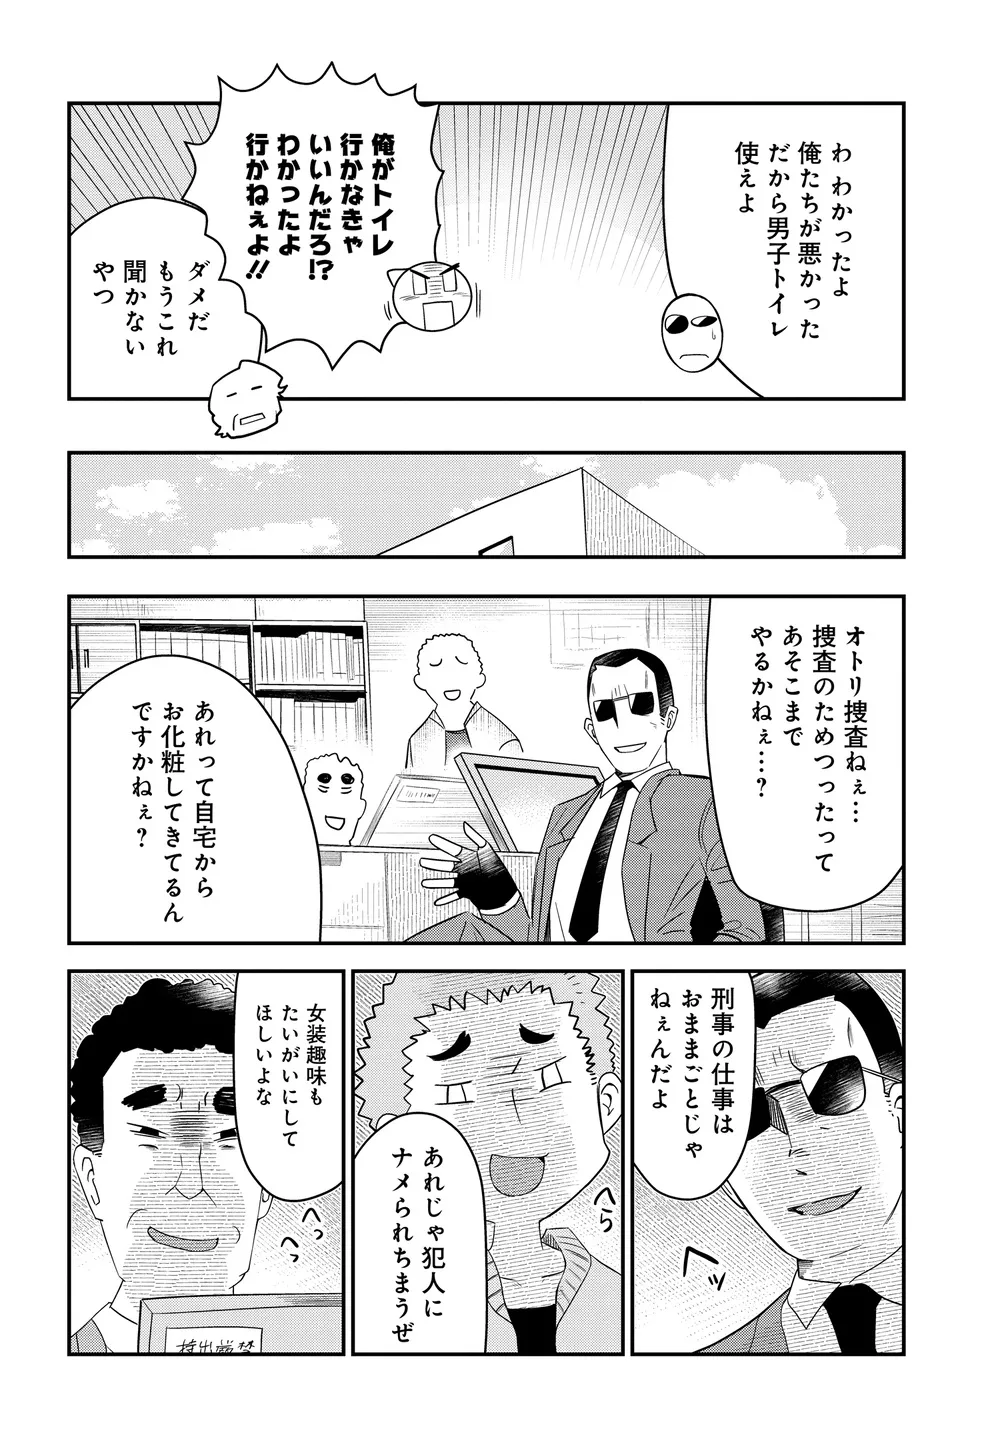 『美人すぎる女装刑事 藤堂さん』(29/39)